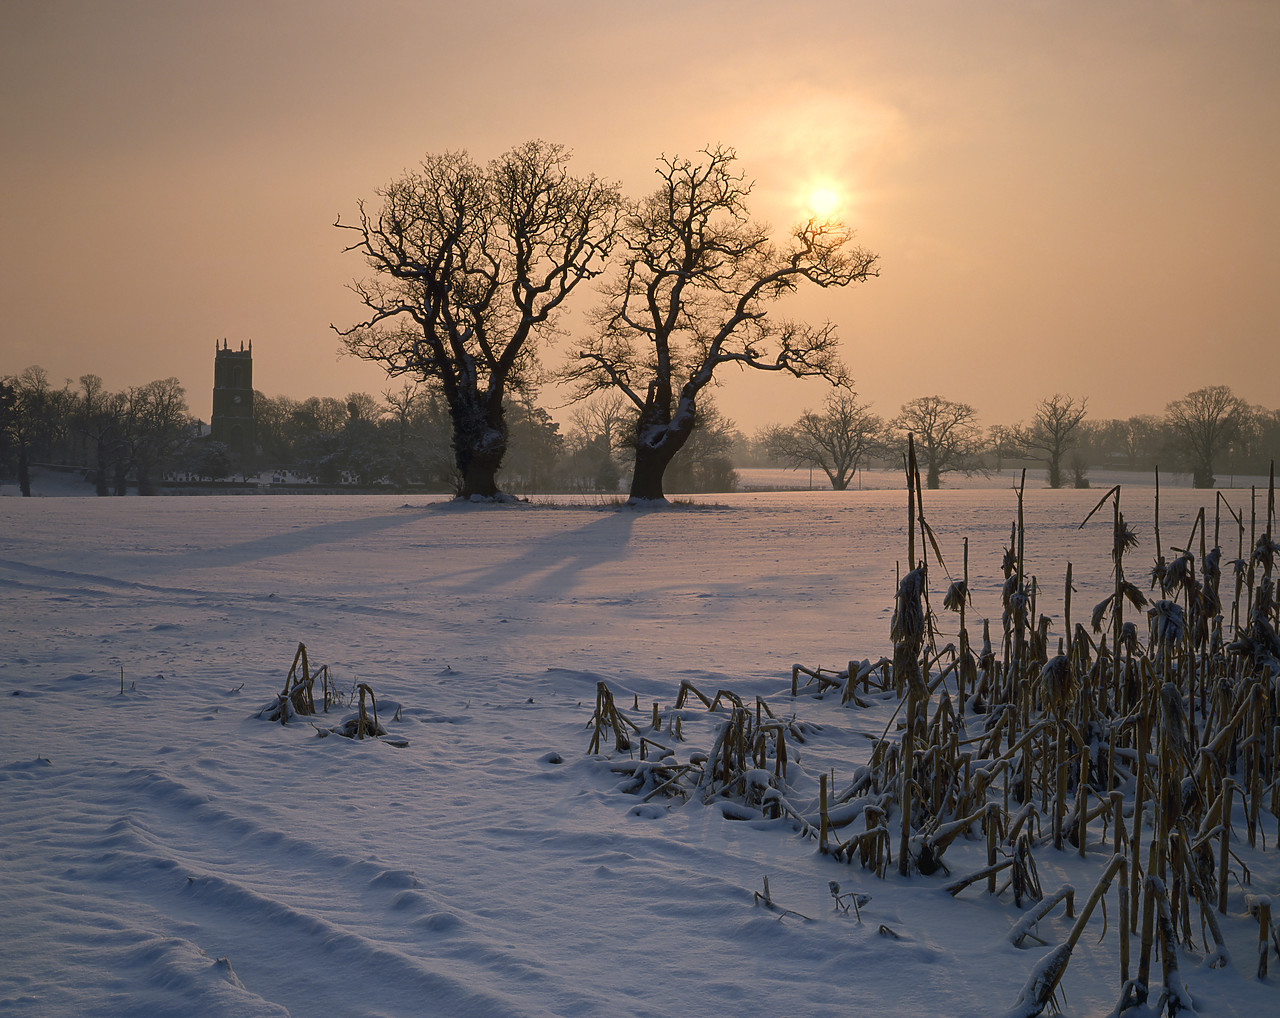 #934493-1 - Sunrise over Winter Landscape, Ditchingham, Norfolk, England